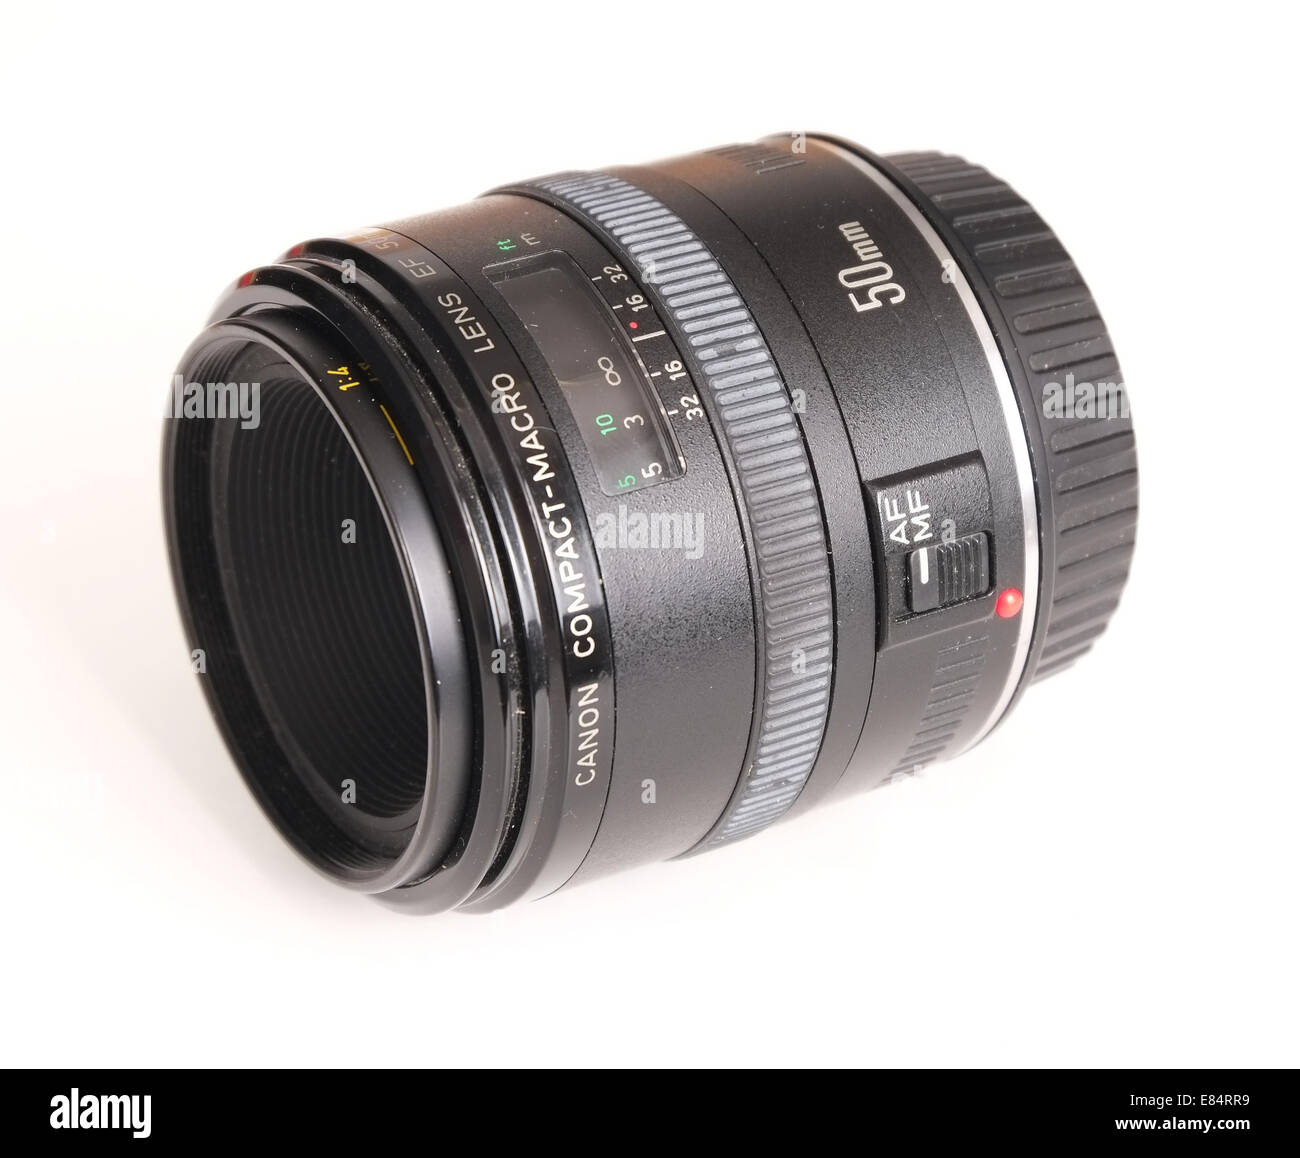 Le Canon 50mm macro-objectif compact, offrant une netteté et clarté dans un petit paquet. 27 août 2014 Banque D'Images